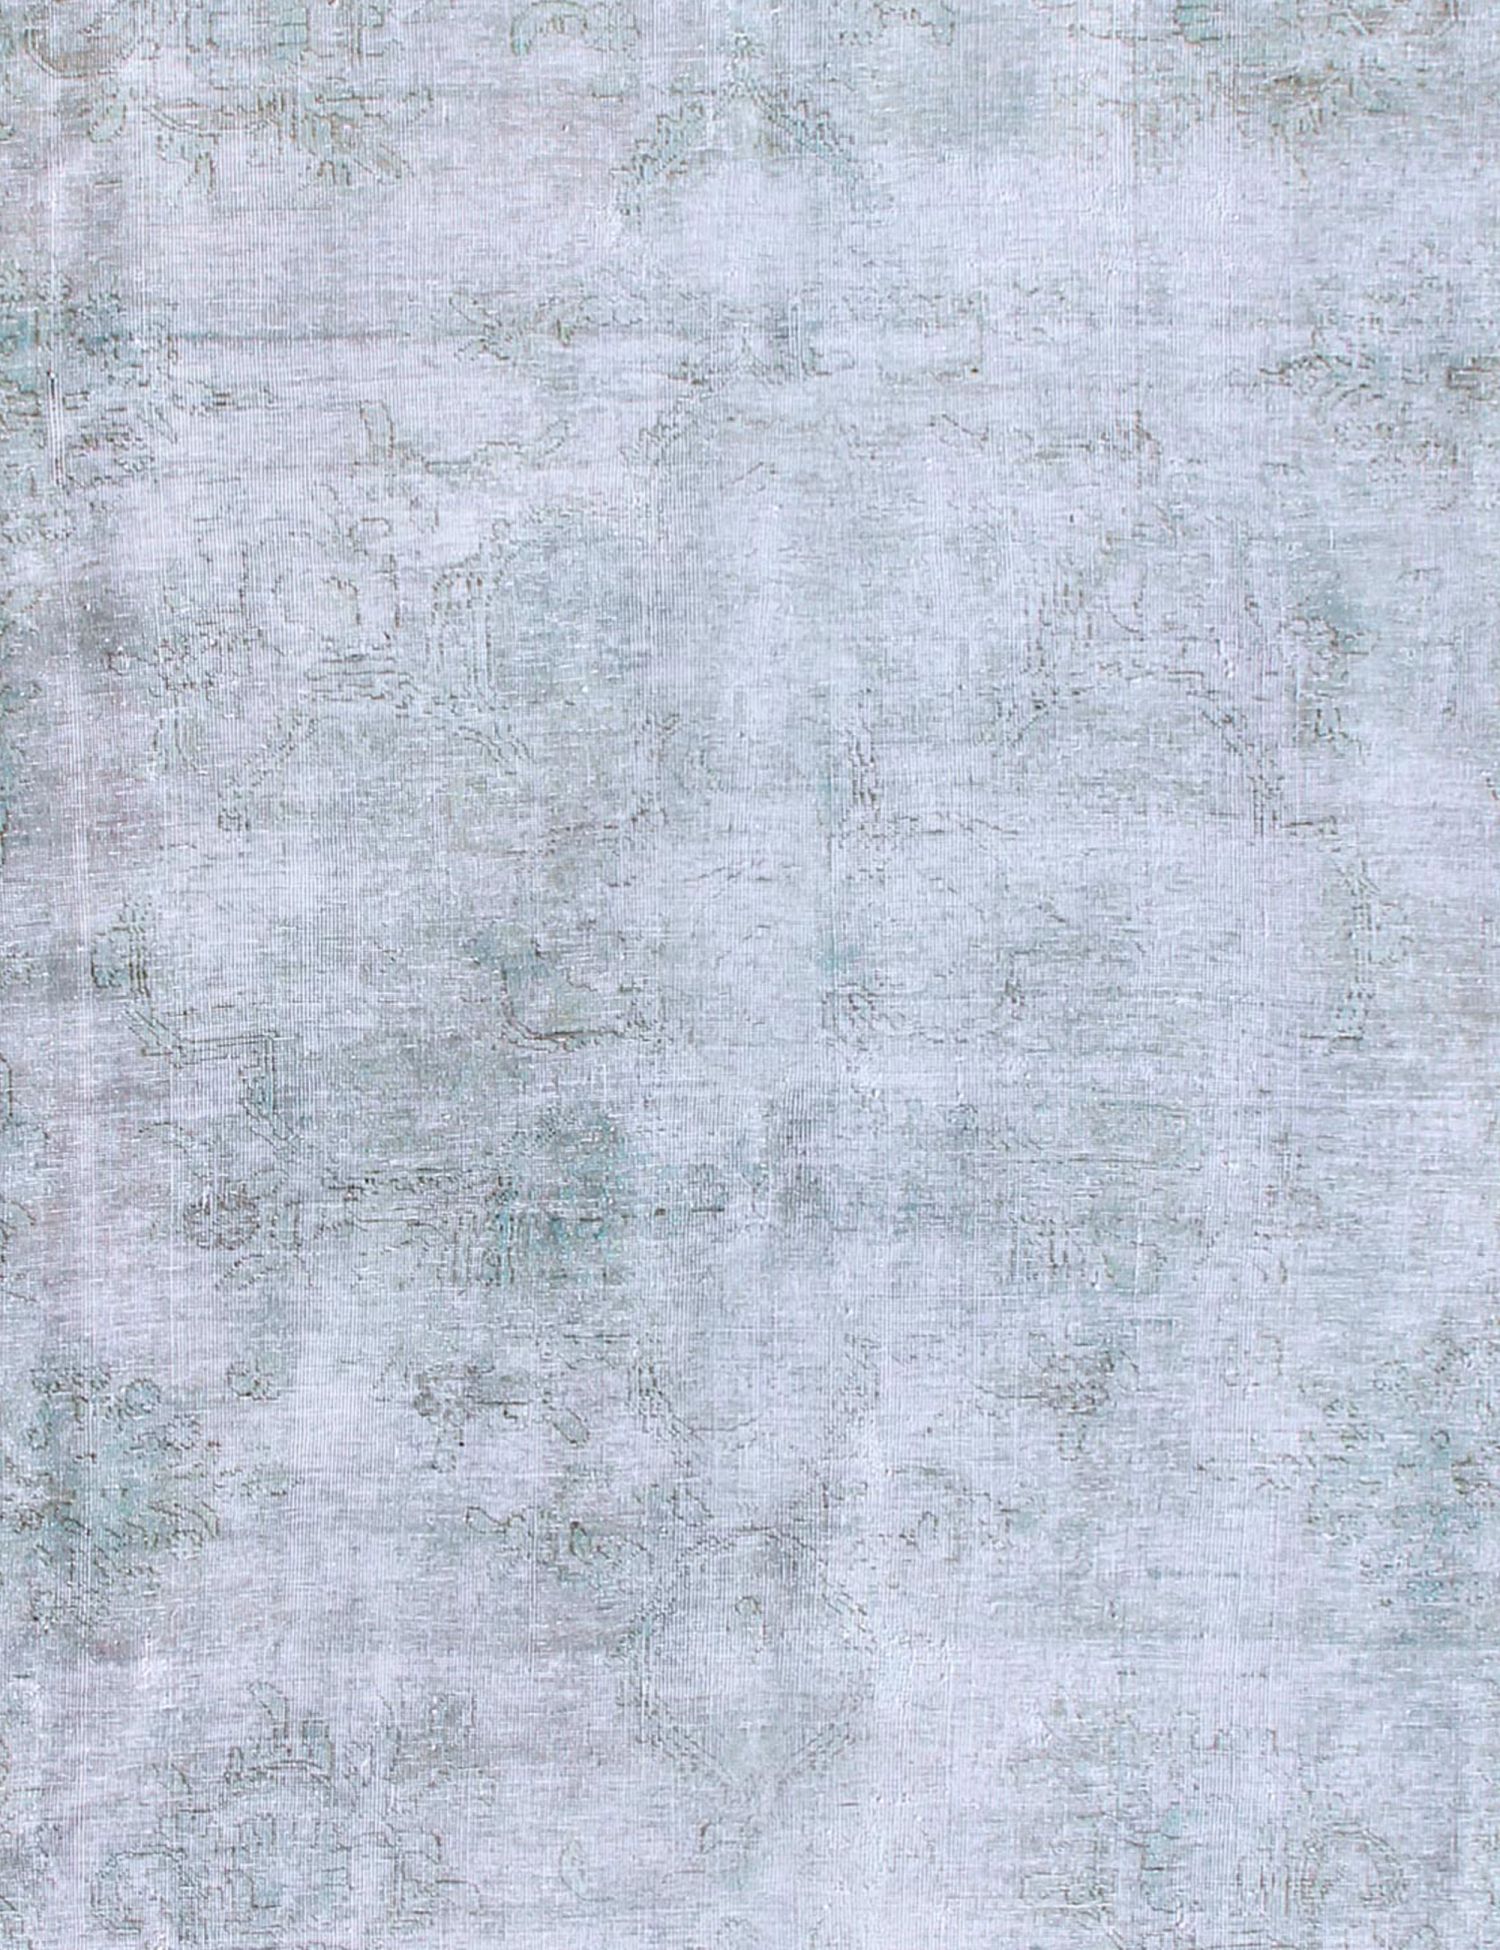 Persischer Vintage Teppich  türkis <br/>245 x 245 cm